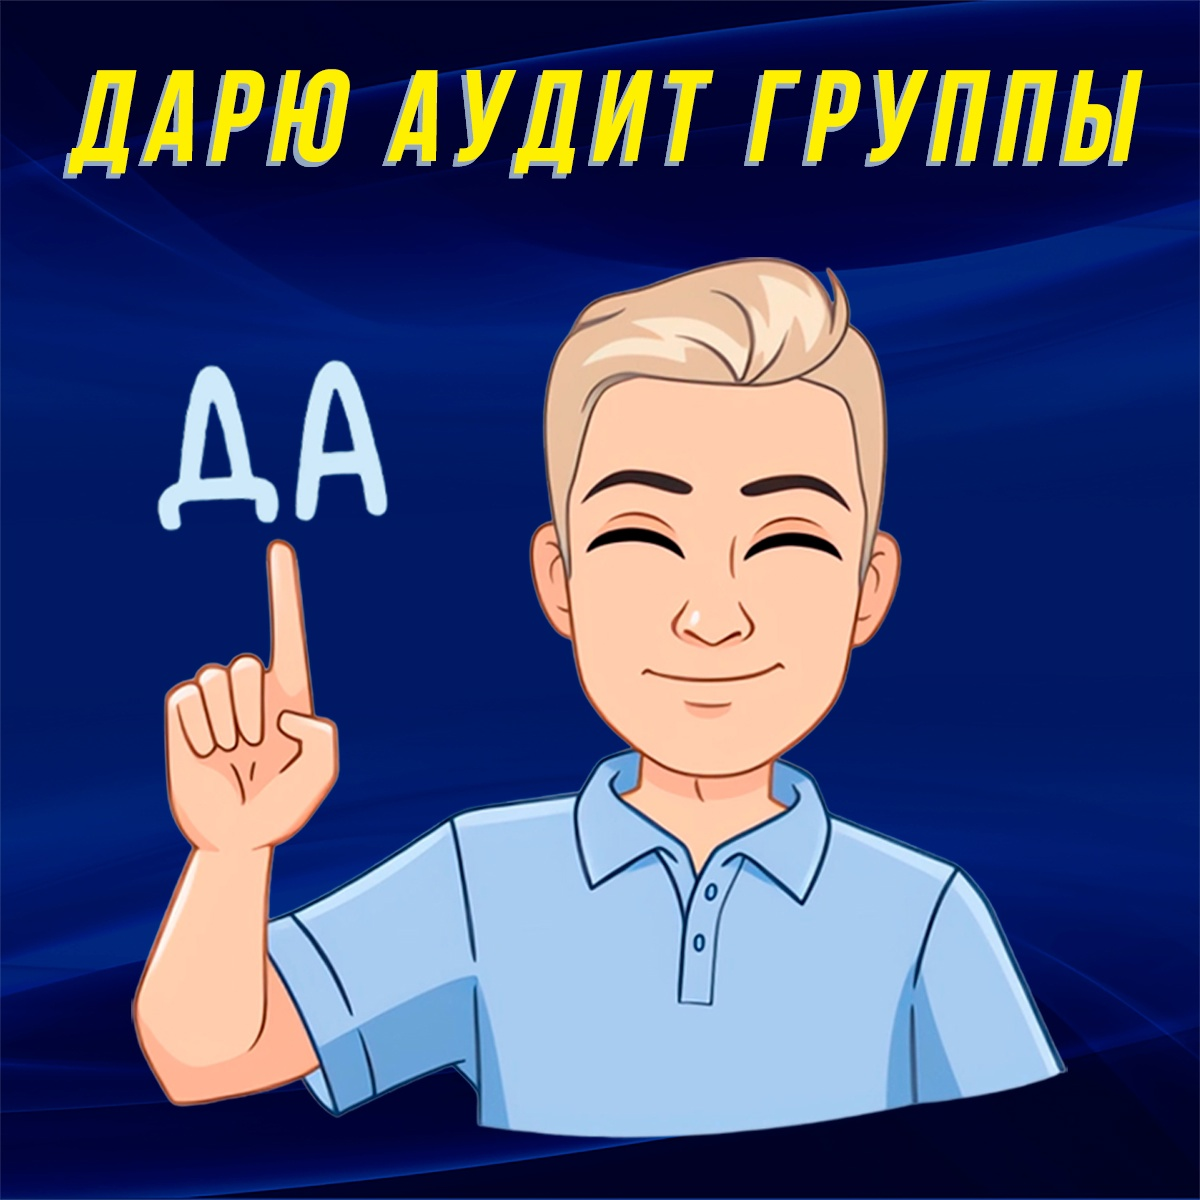 Аудит группы, сообщества ВКонтакте проводится индивидуально в формате коучинга в режиме голосового звонка в ВК и длится около часа-полутора.